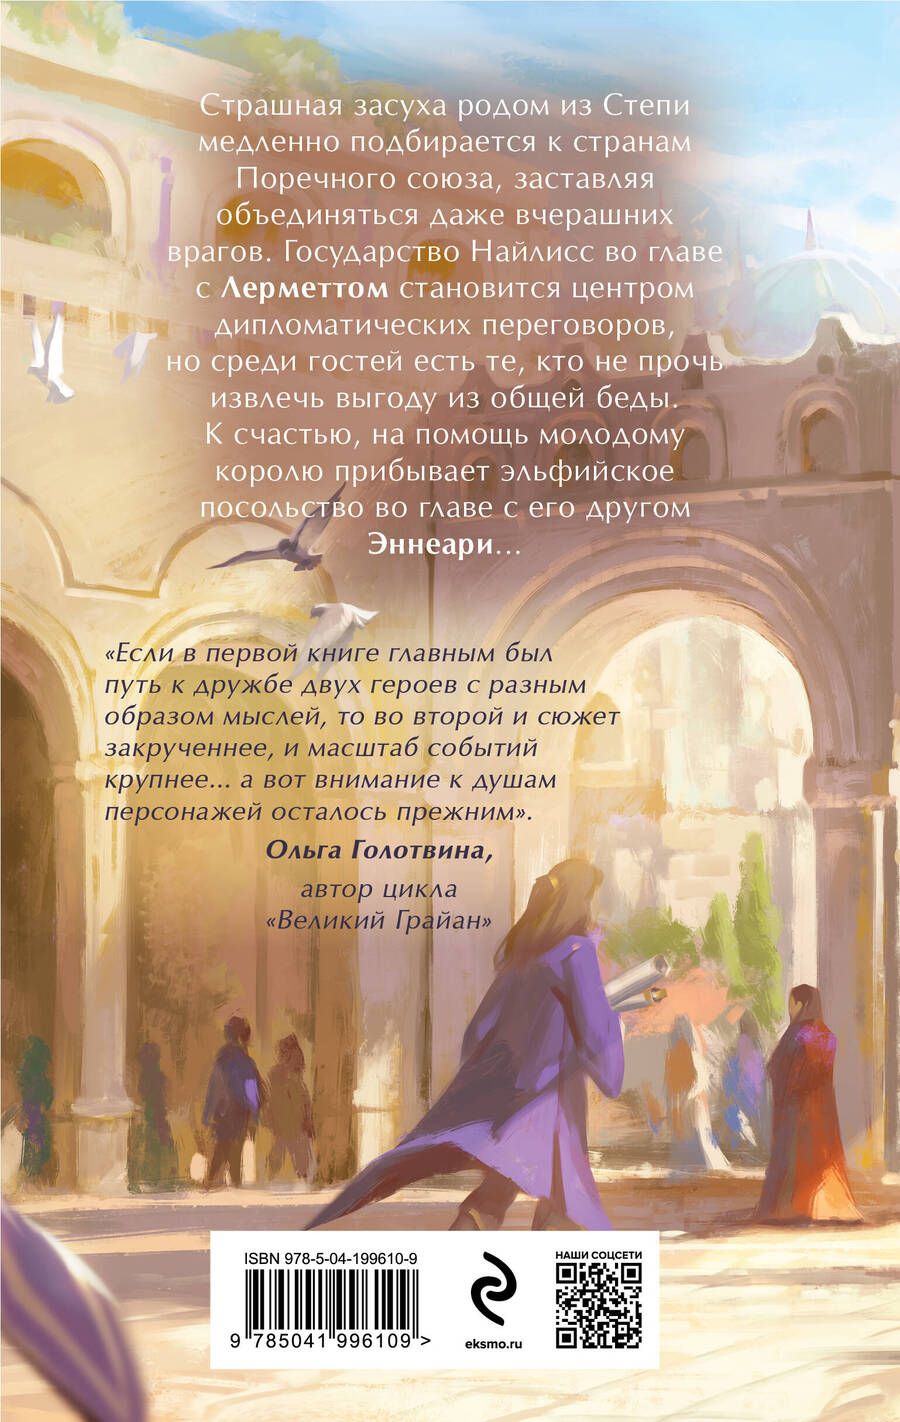 Обложка книги "Элеонора Раткевич: Ларе-и-т'аэ"